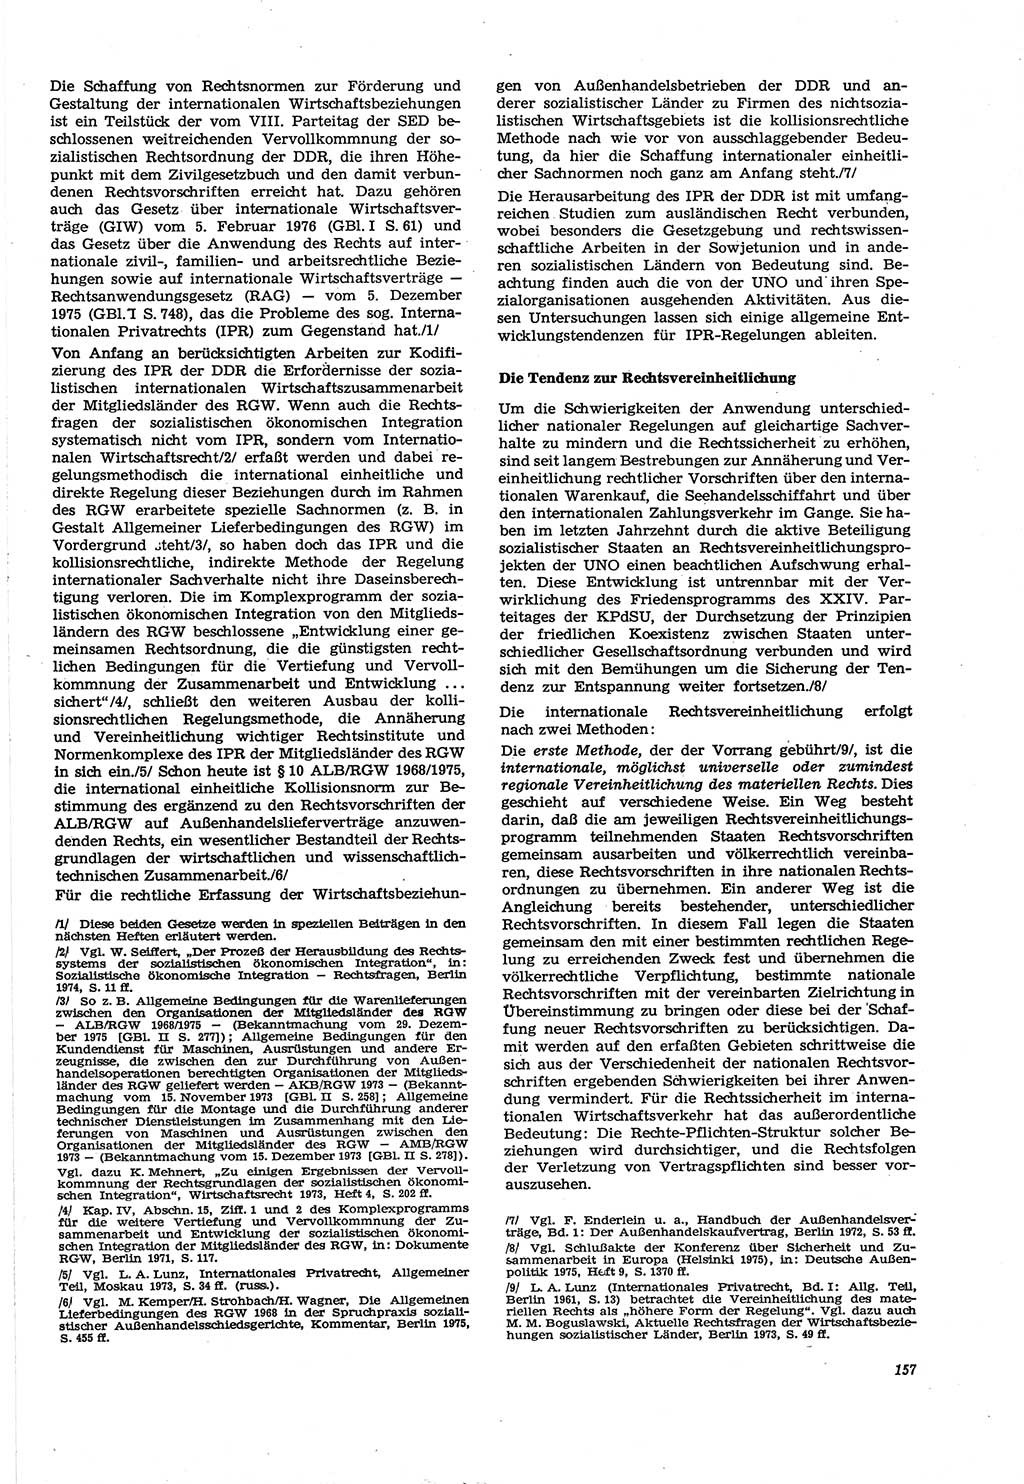 Neue Justiz (NJ), Zeitschrift für Recht und Rechtswissenschaft [Deutsche Demokratische Republik (DDR)], 30. Jahrgang 1976, Seite 157 (NJ DDR 1976, S. 157)